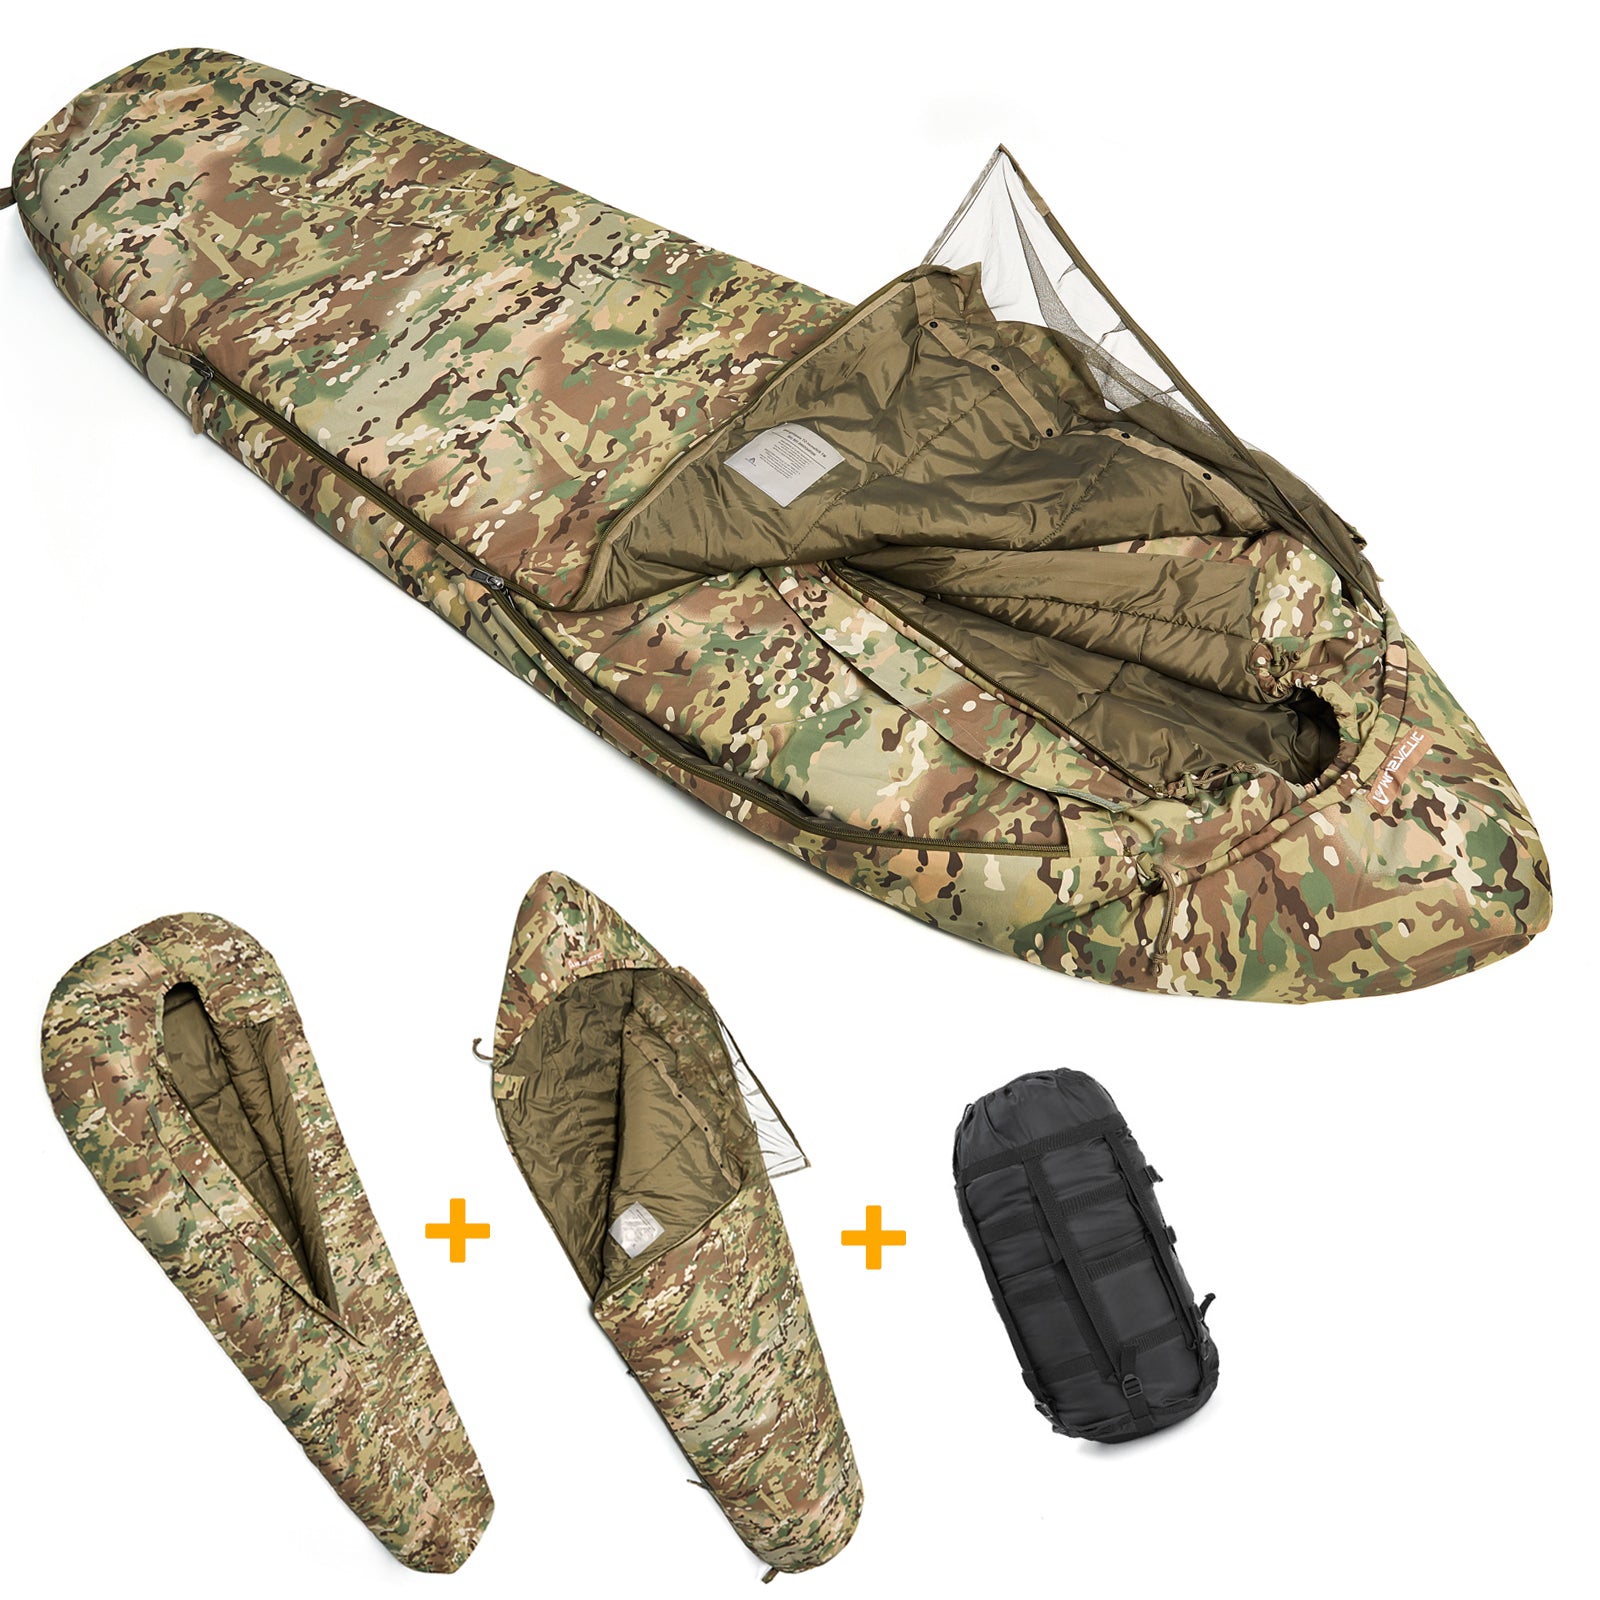 MT Modular Sleeping Bag System 2.0 with Bivy Cover, Mummy Sleep Bag for All Seasons Multicam tourist Sleep bag - AKmax